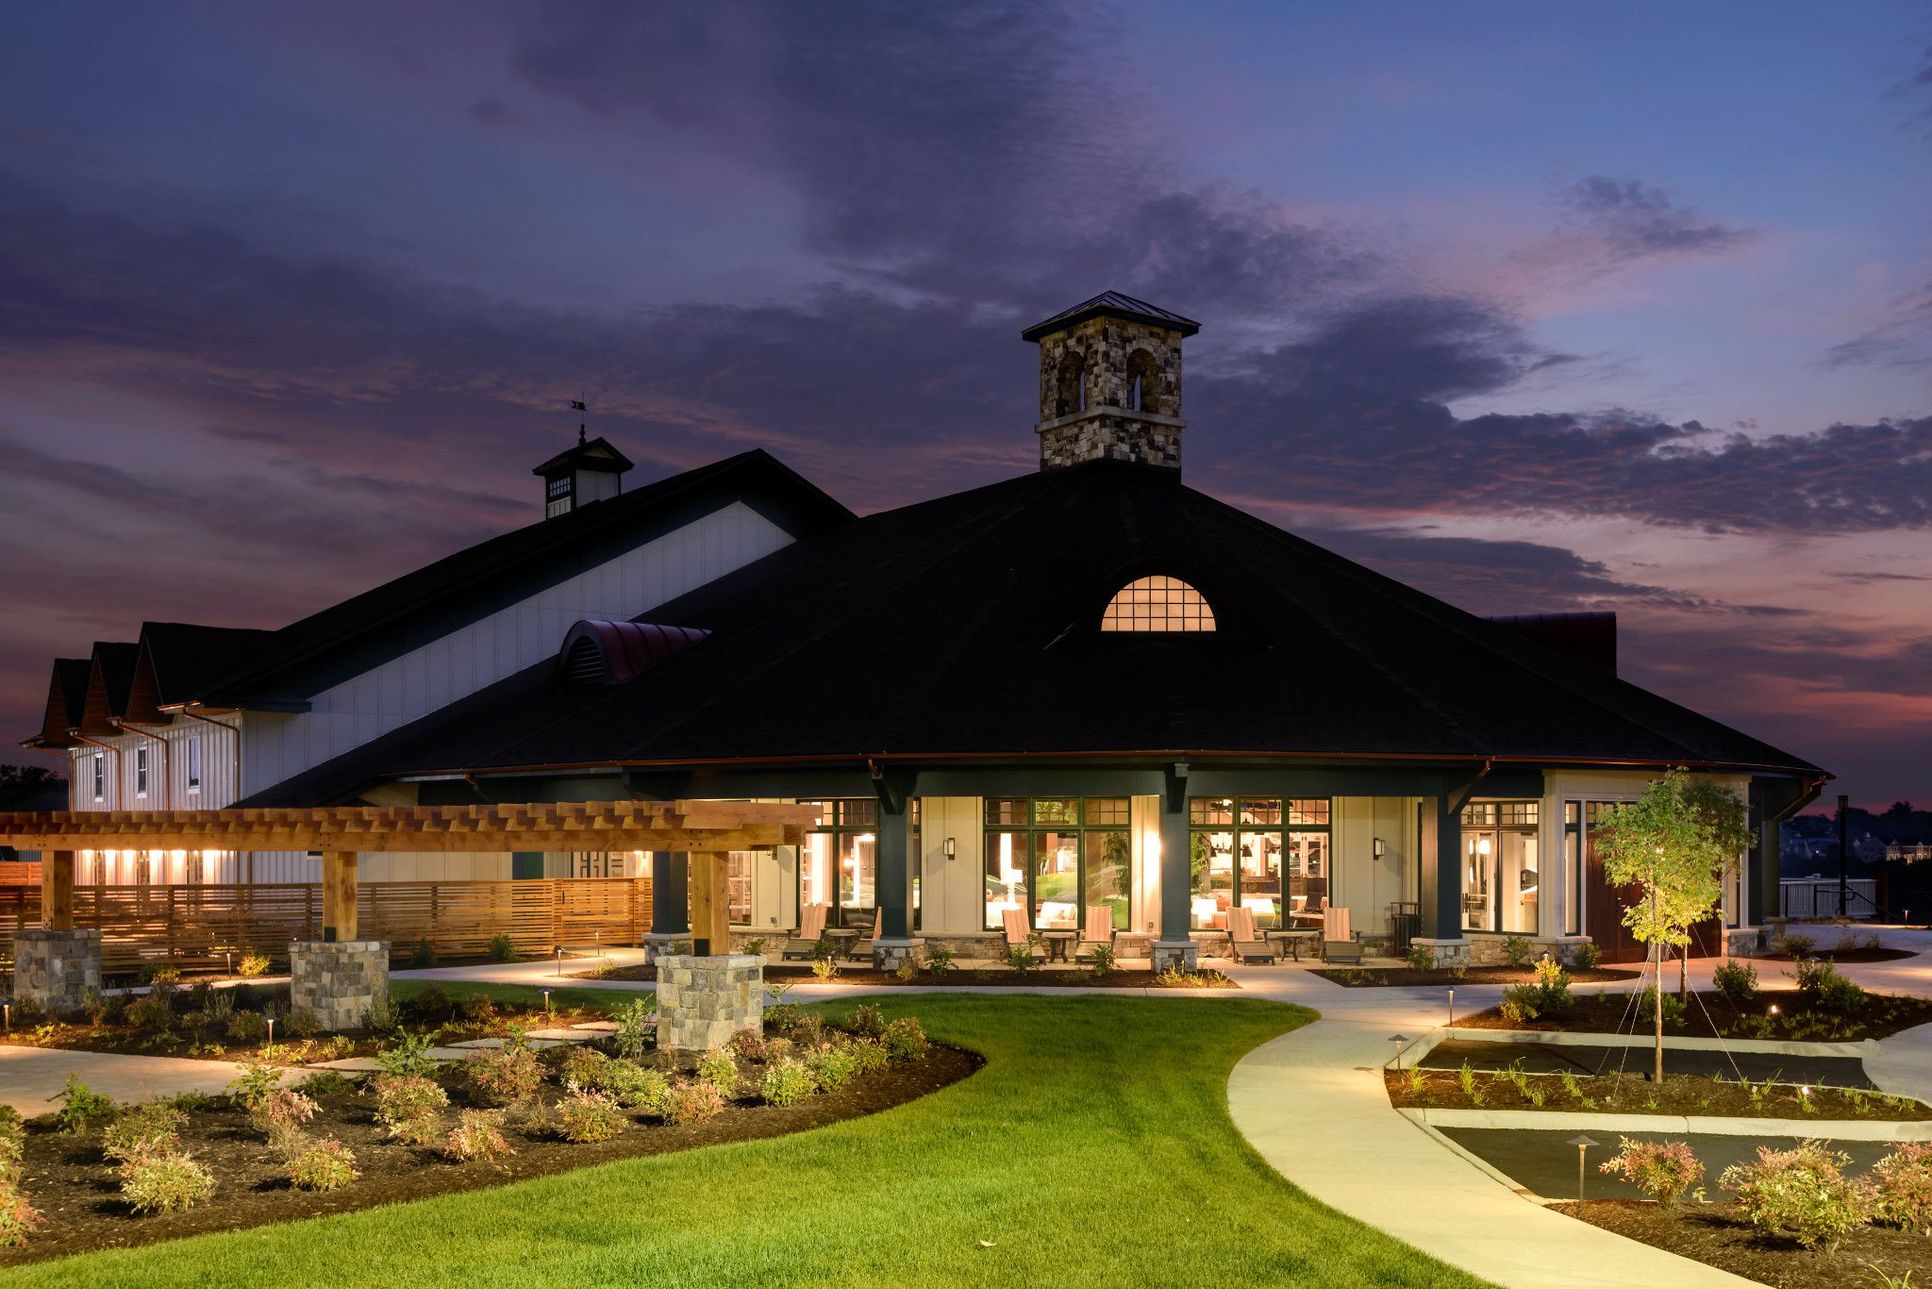 Shenandoah Lodge:Shenandoah Lodge